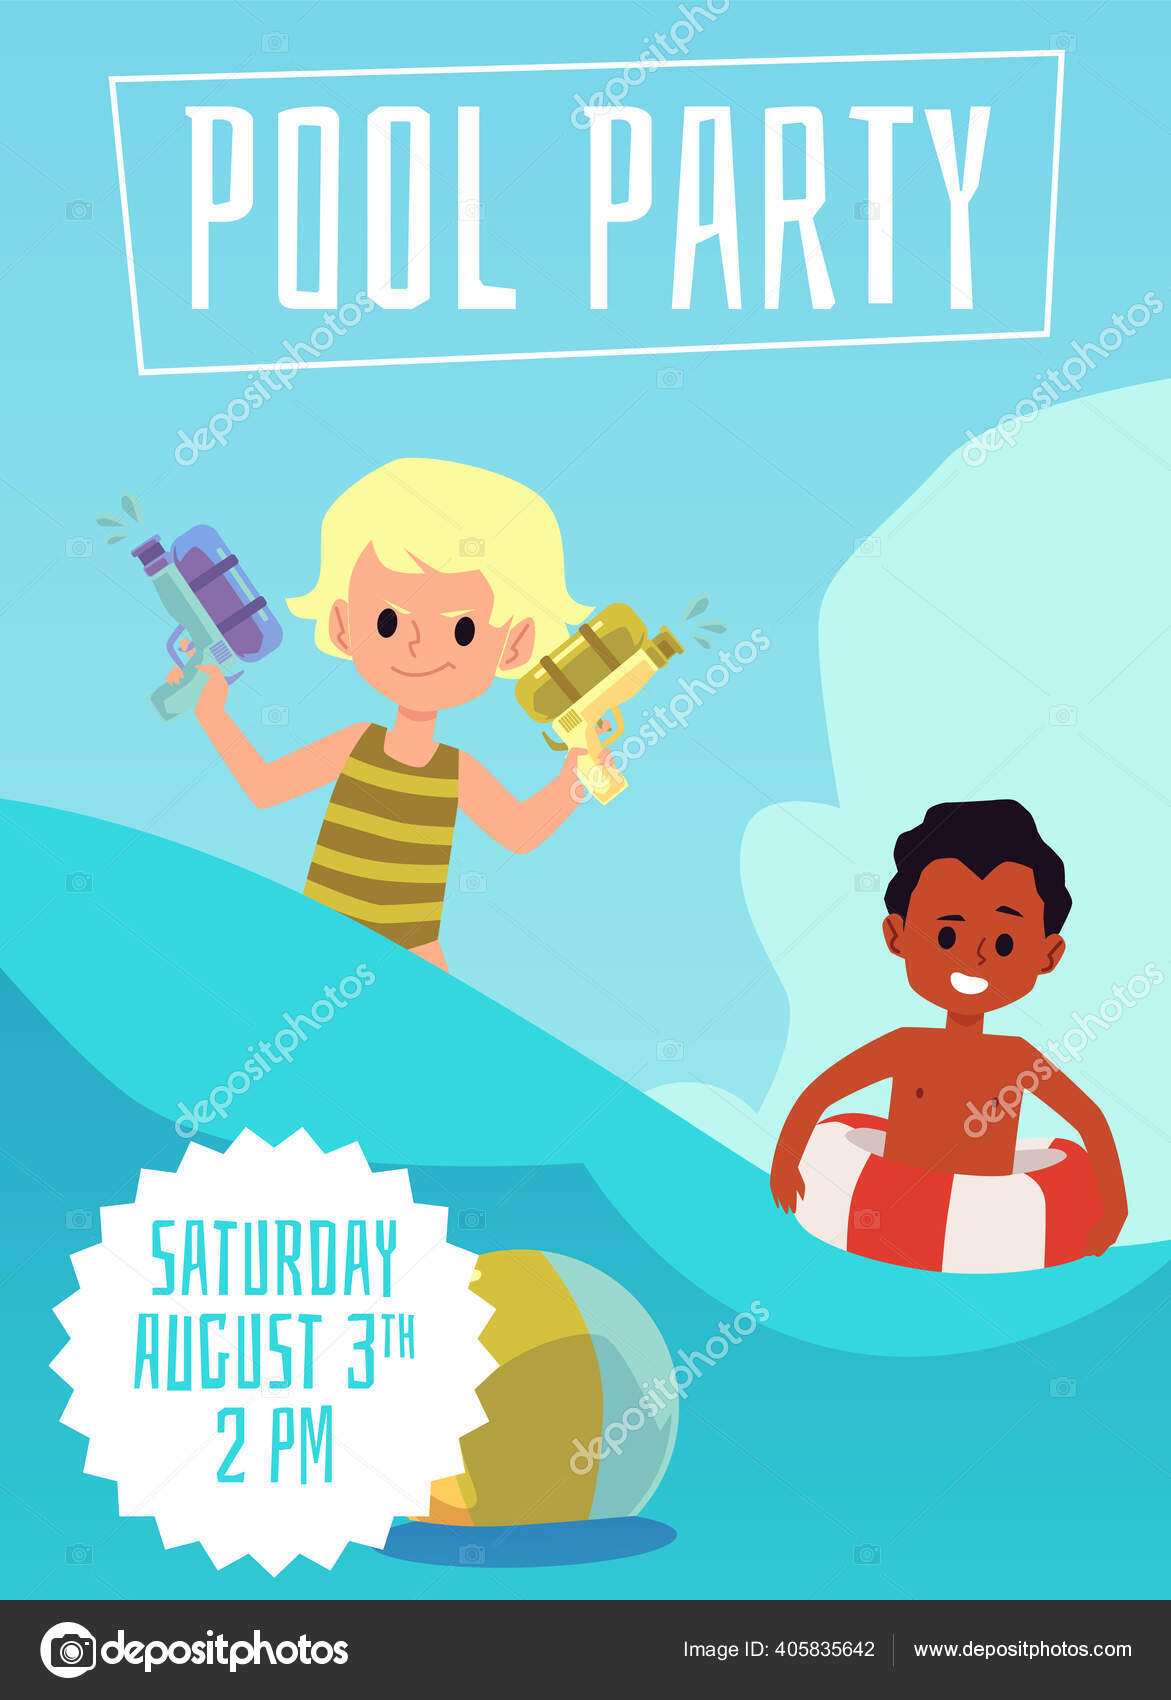 Convite Animado Pool Party das Meninas